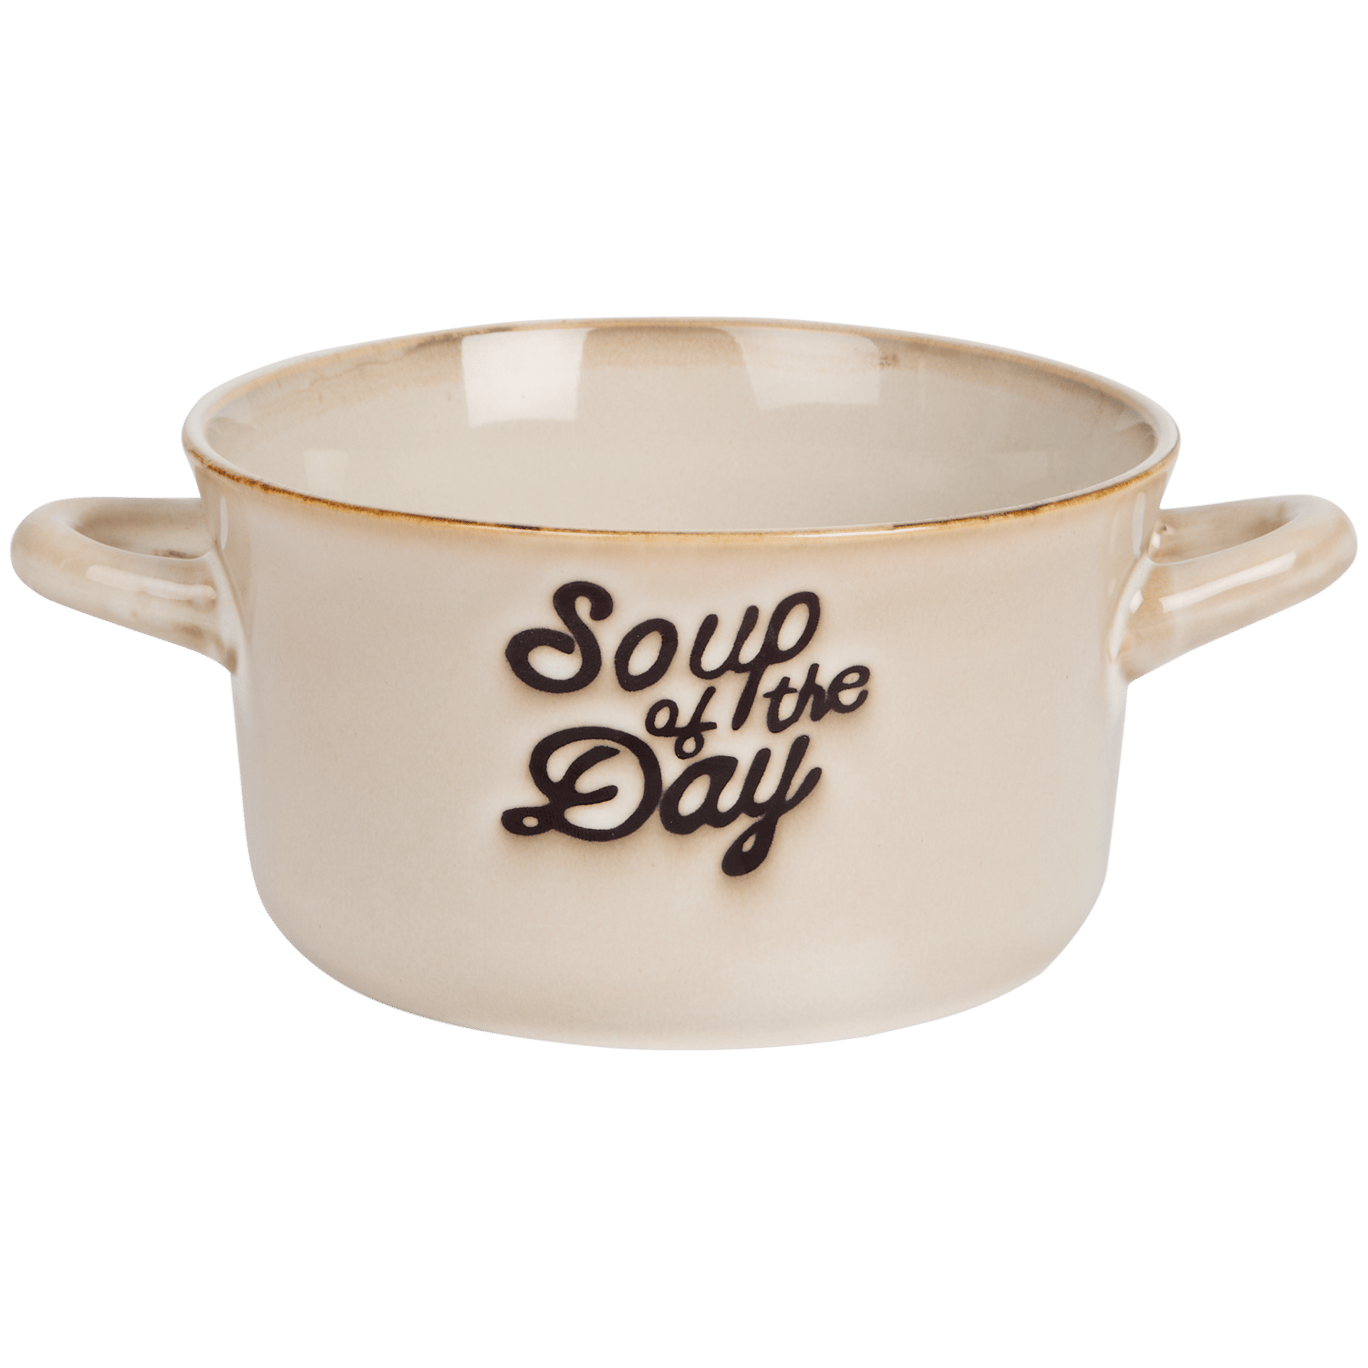 Keramická miska na polévku